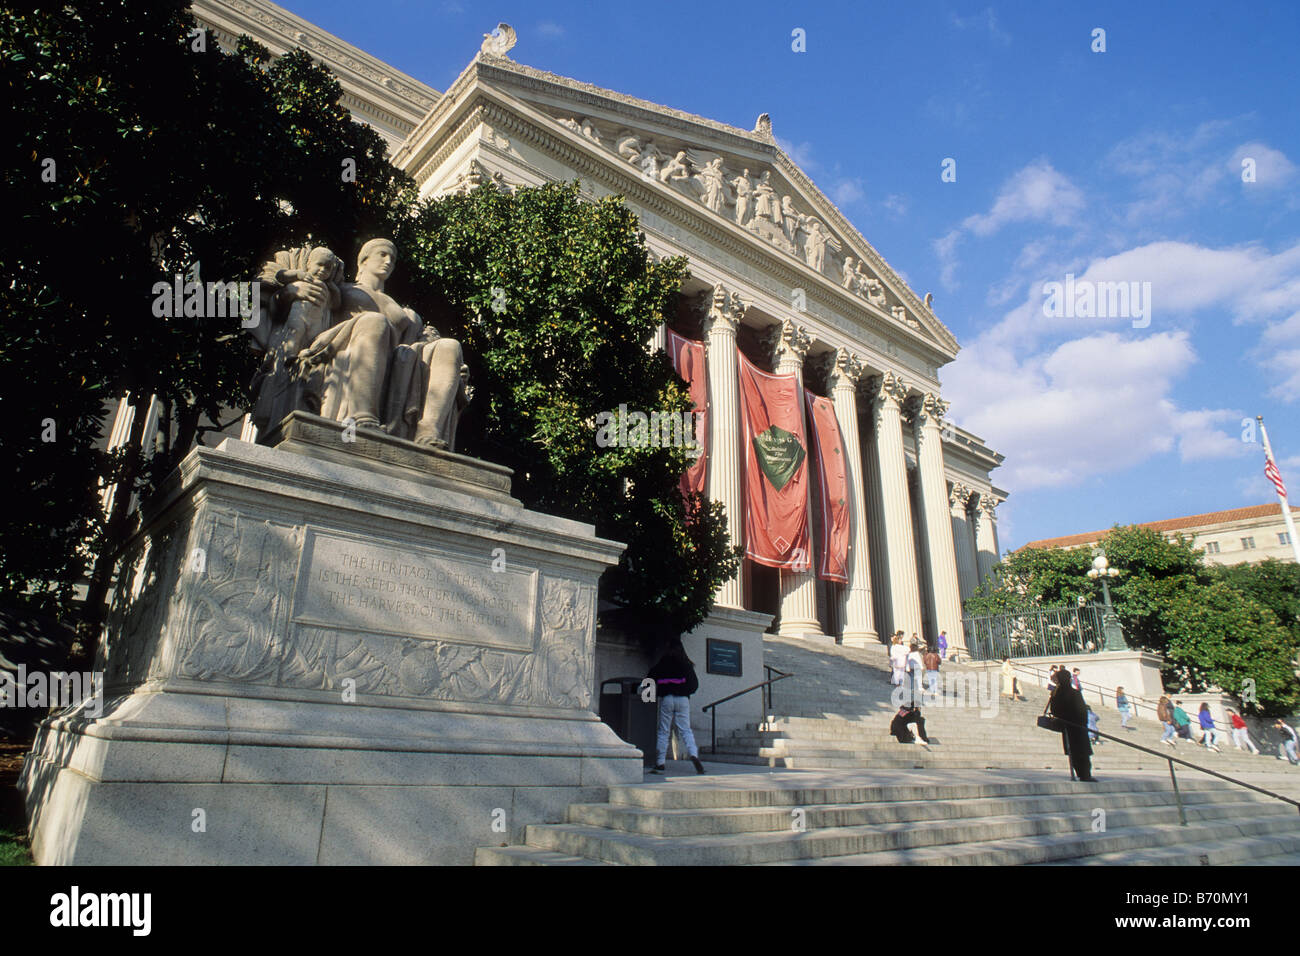 USA Washington DC L'édifice des Archives nationales des États-Unis d'Amérique où la déclaration d'indépendance et de la Déclaration des droits sont conservés Banque D'Images